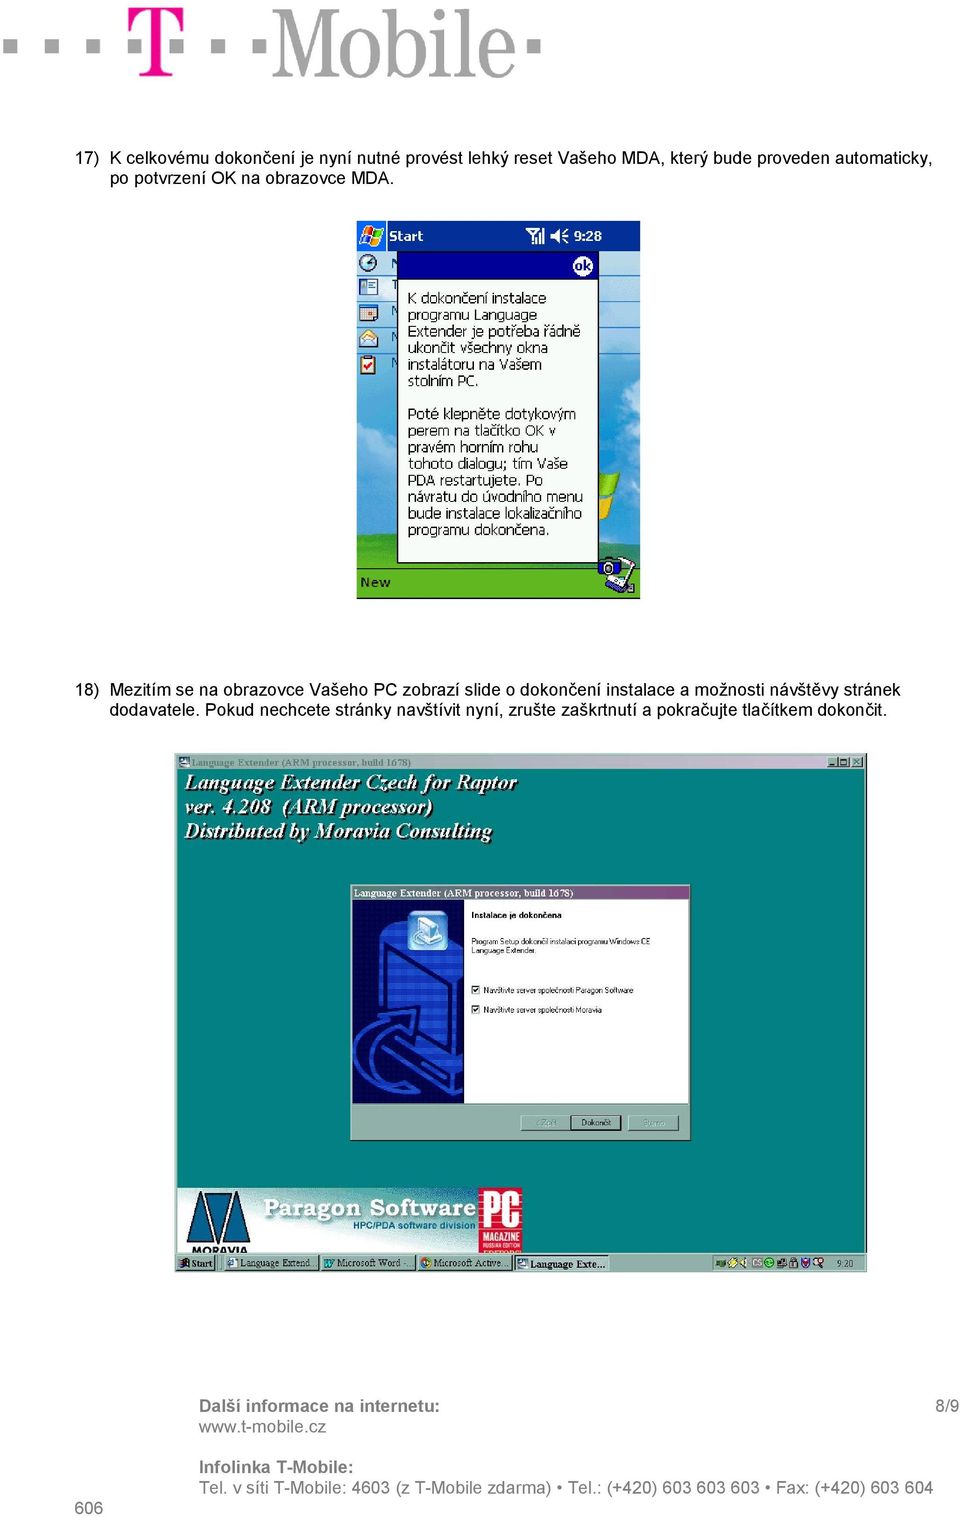 18) Mezitím se na obrazovce Vašeho PC zobrazí slide o dokončení instalace a možnosti